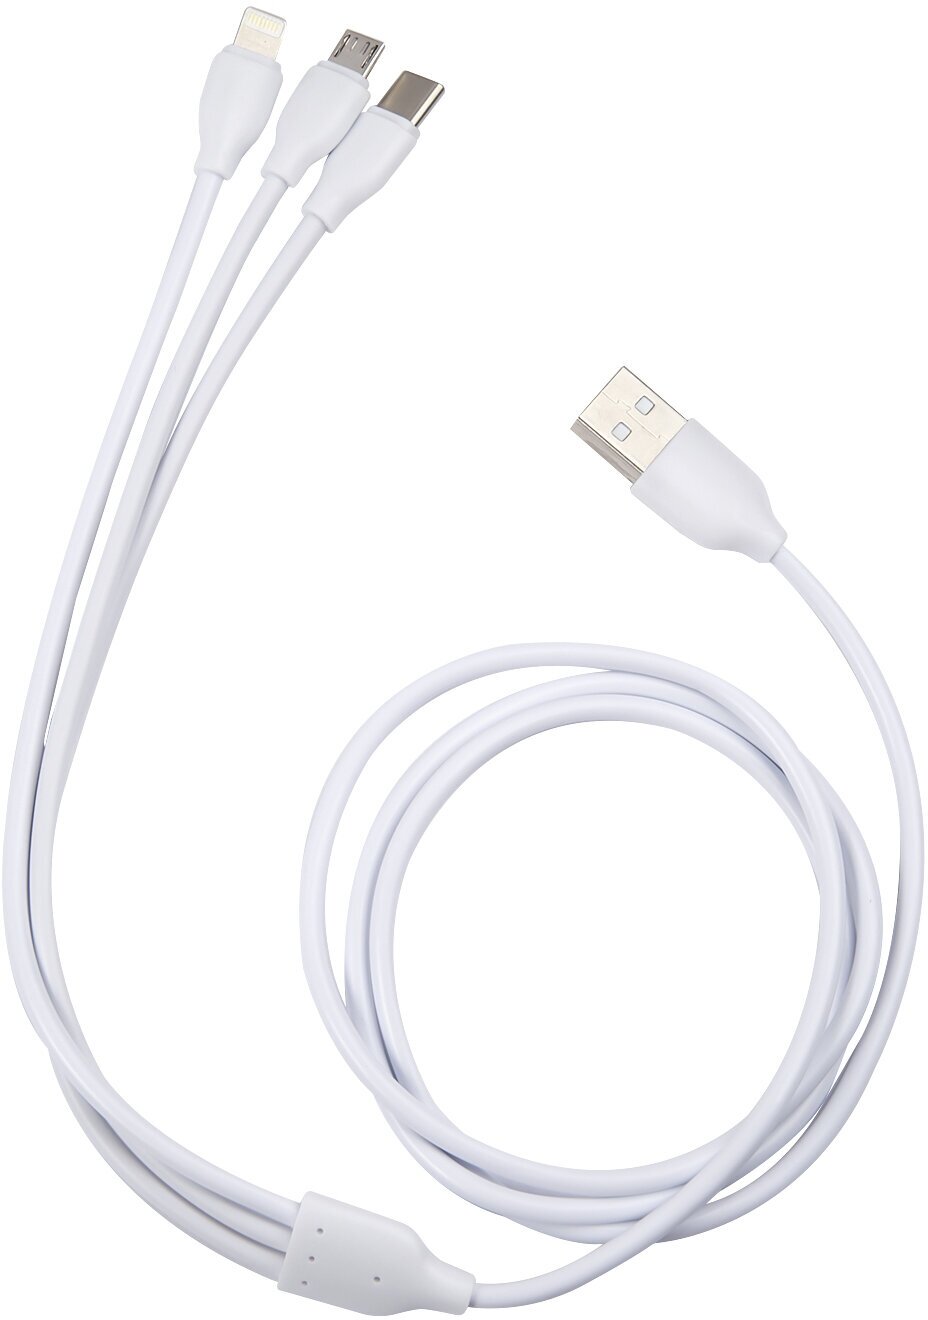 Дата кабель USB - micro USB + Lightning + Type-C (3 в 1) 2A/Провод/Кабель USB - micro USB + Lightning + Type-C разъем/Зарядный кабель белый